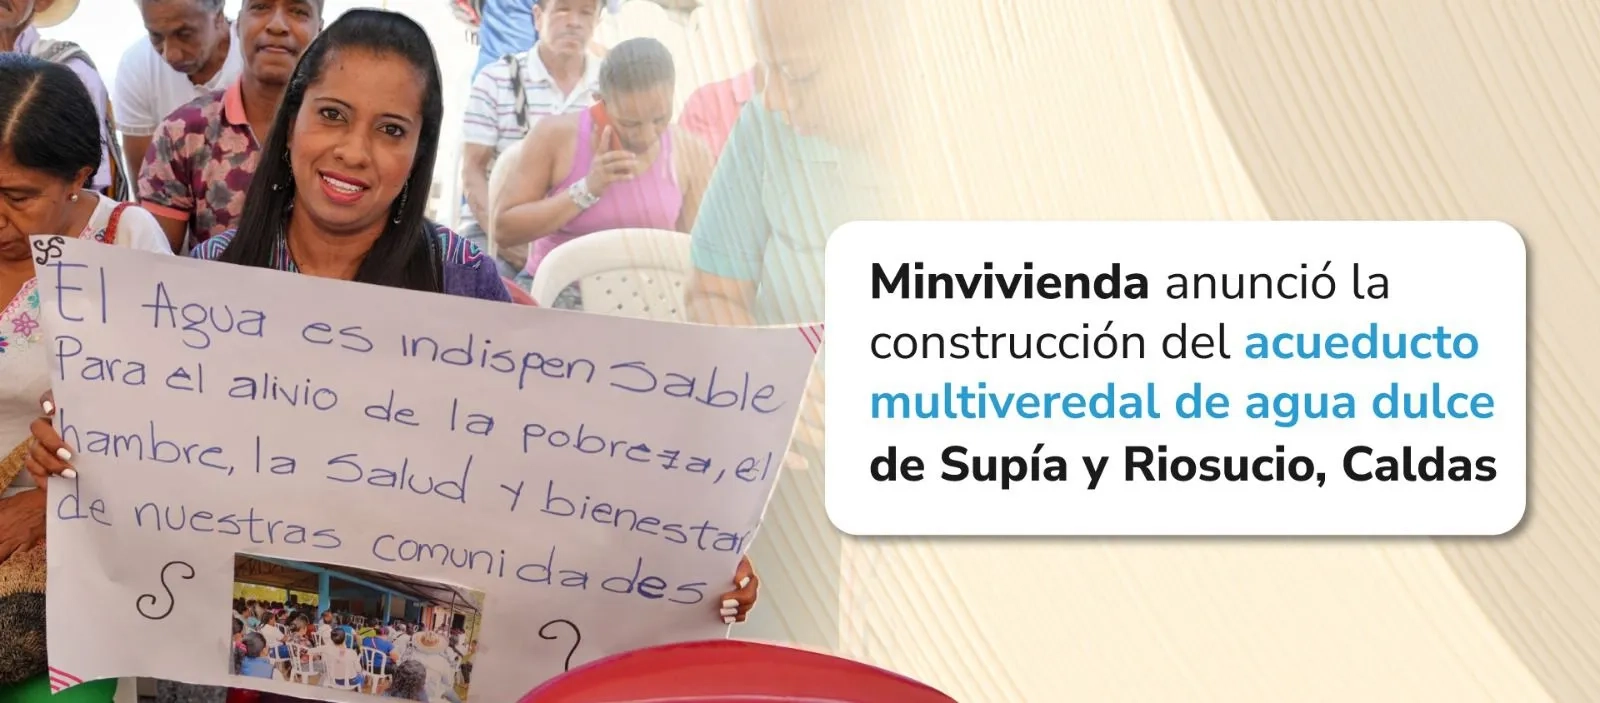 Minvivienda anunció la construcción del acueducto multiveredal de agua dulce de Supía y Riosucio, Caldas